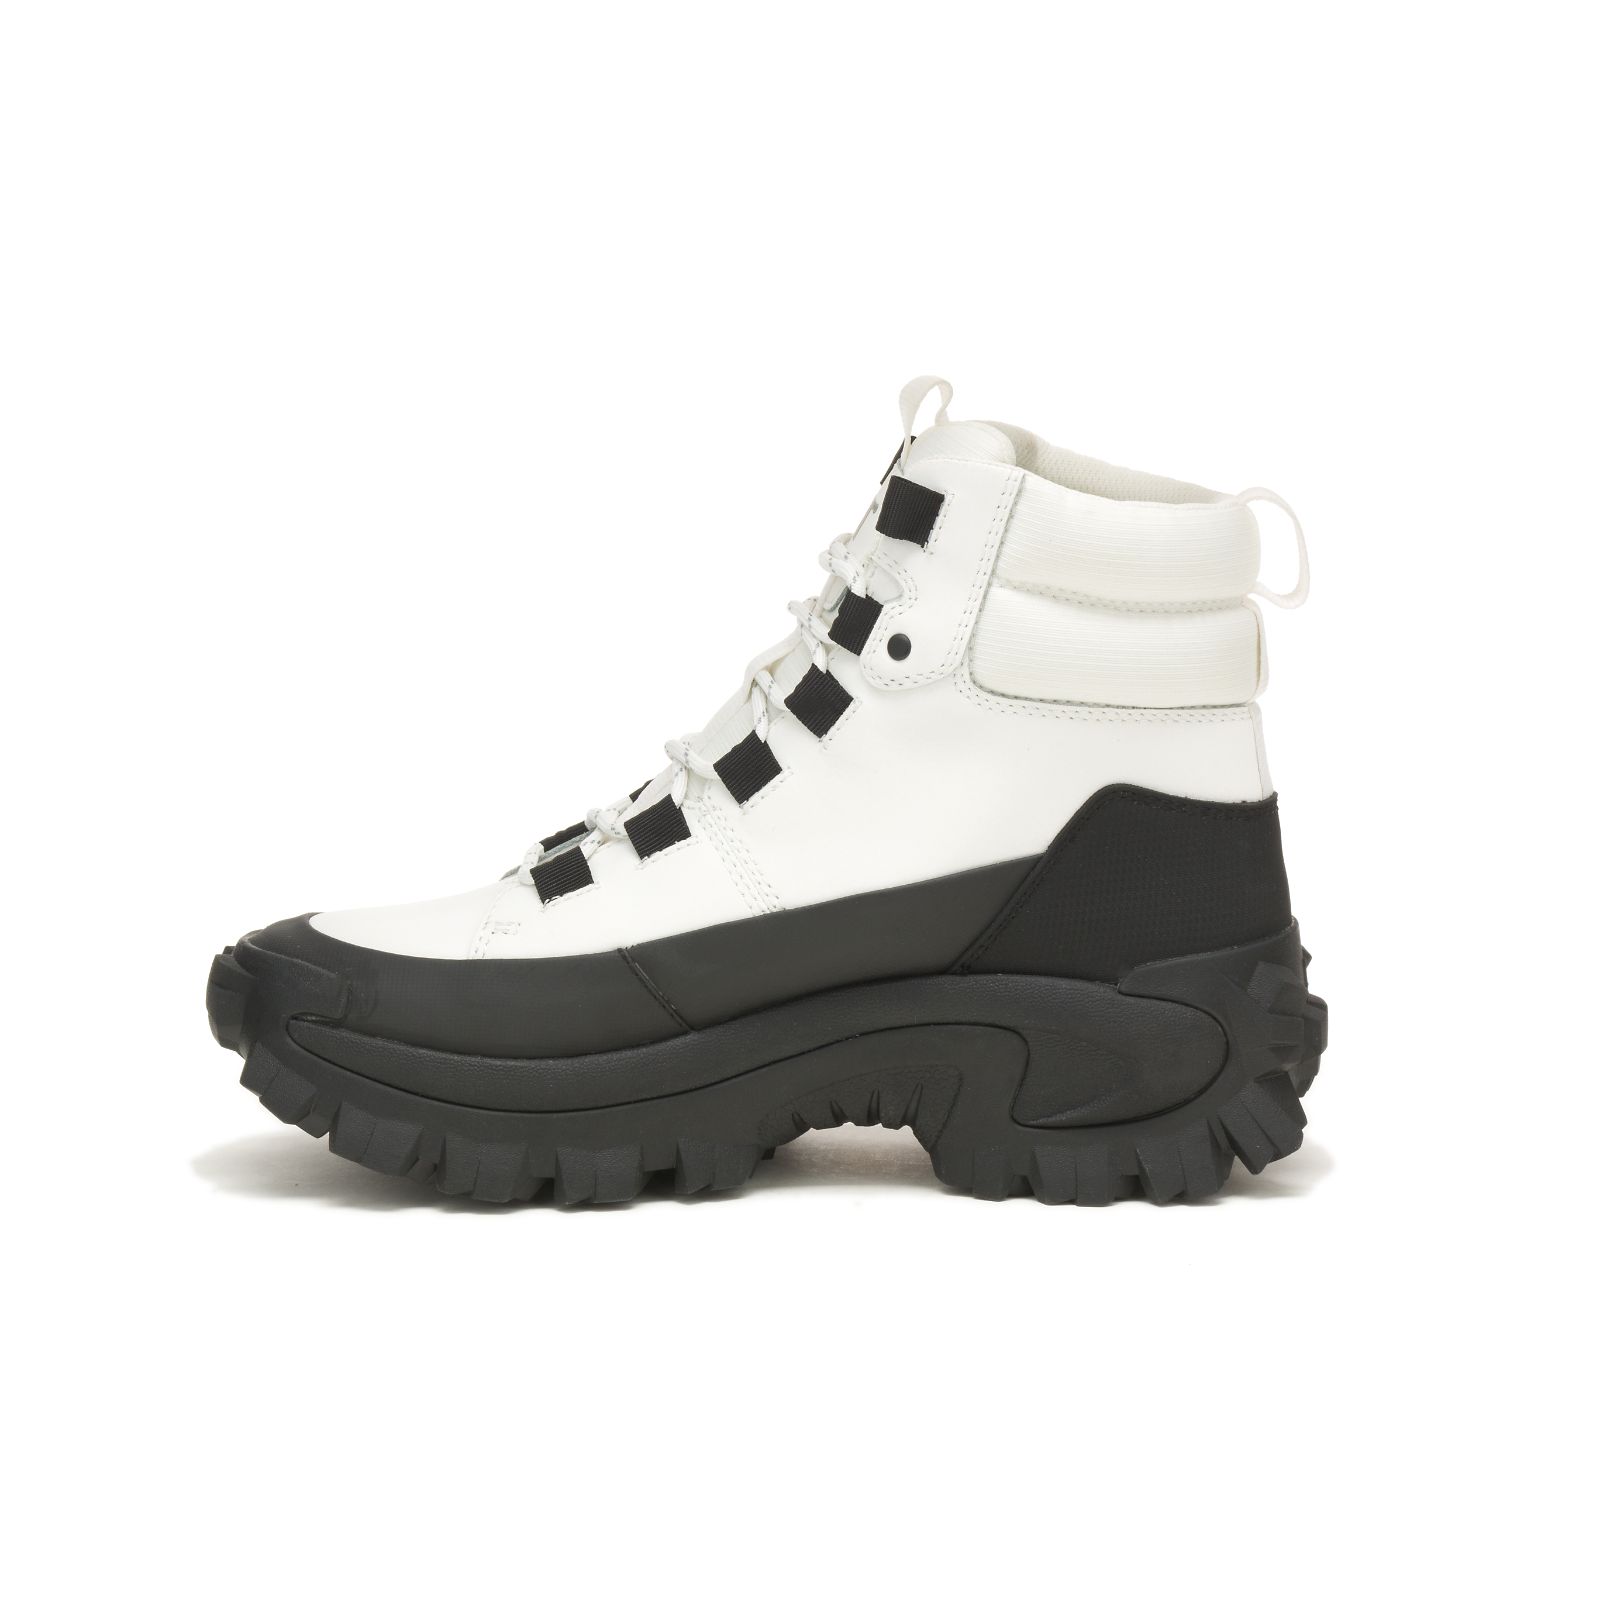 Caterpillar Waterproof Boots Clearance Online - Womens Trespass ...